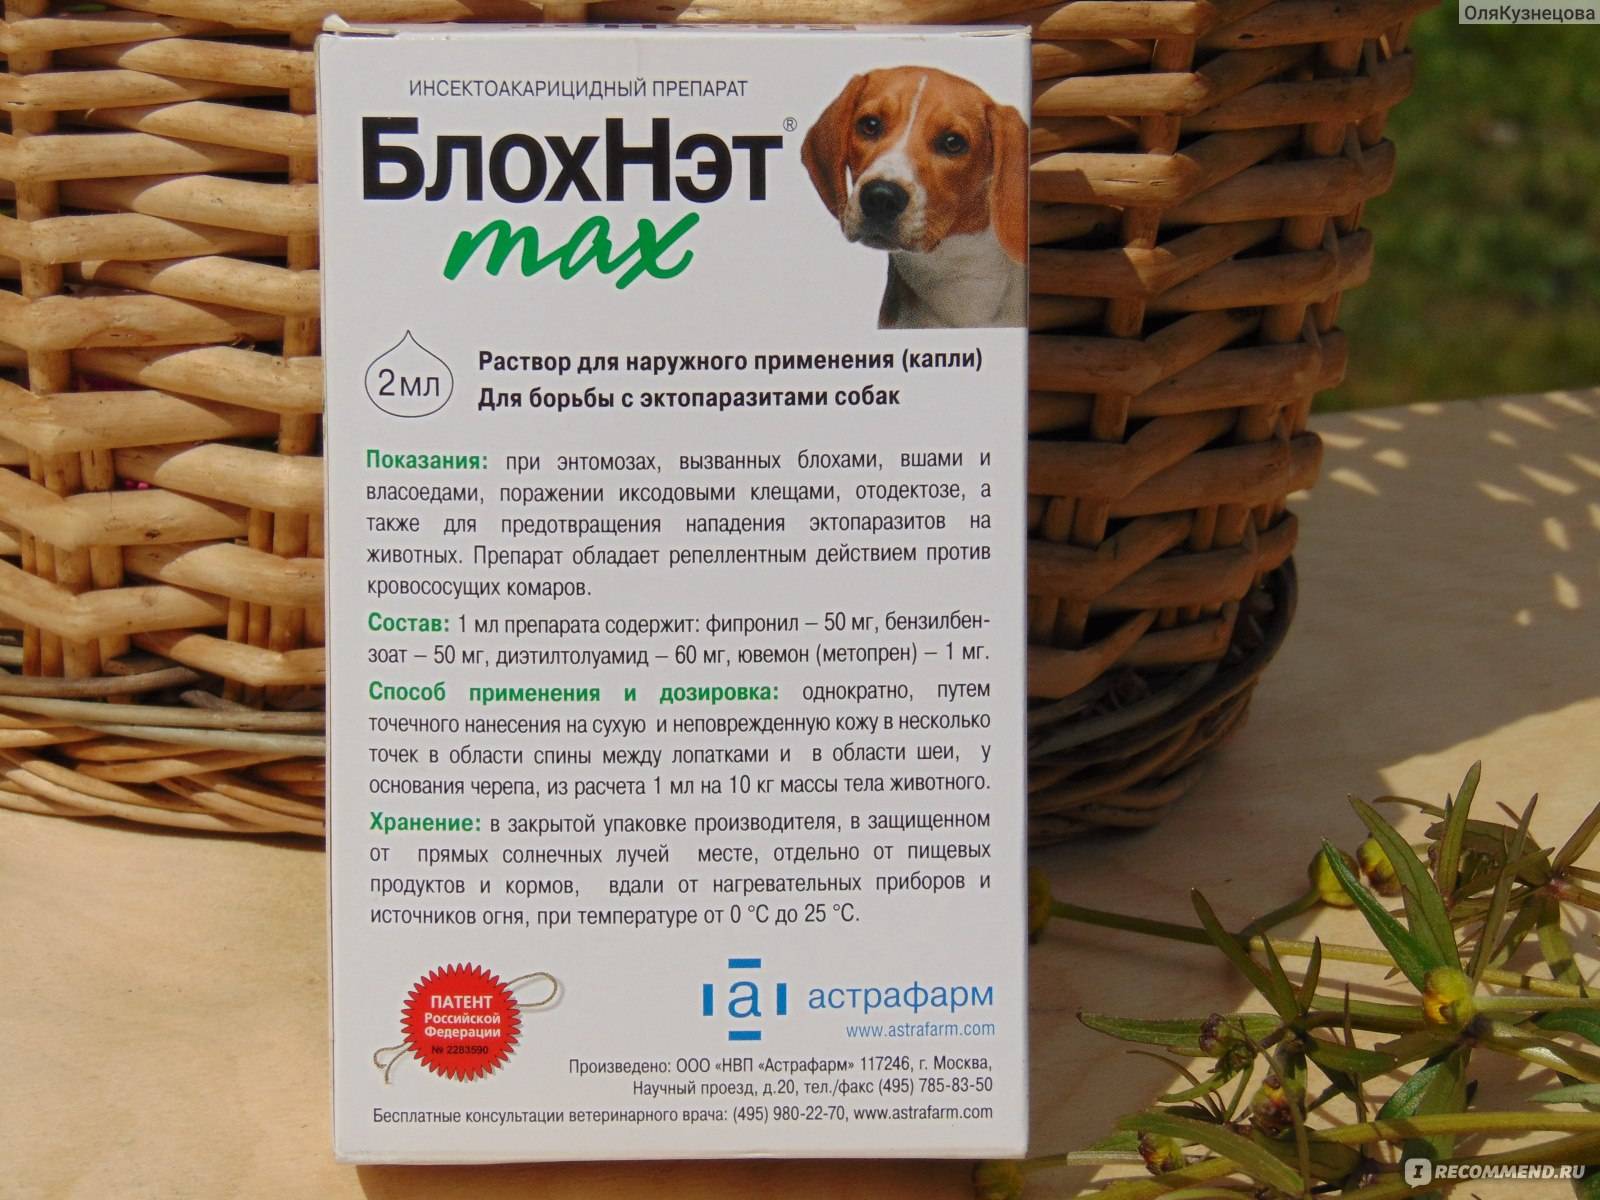 Блохнэт max для собак с массой тела от 30 до 40 кг - купить оптом по цене производителя | тд "астрафарм"